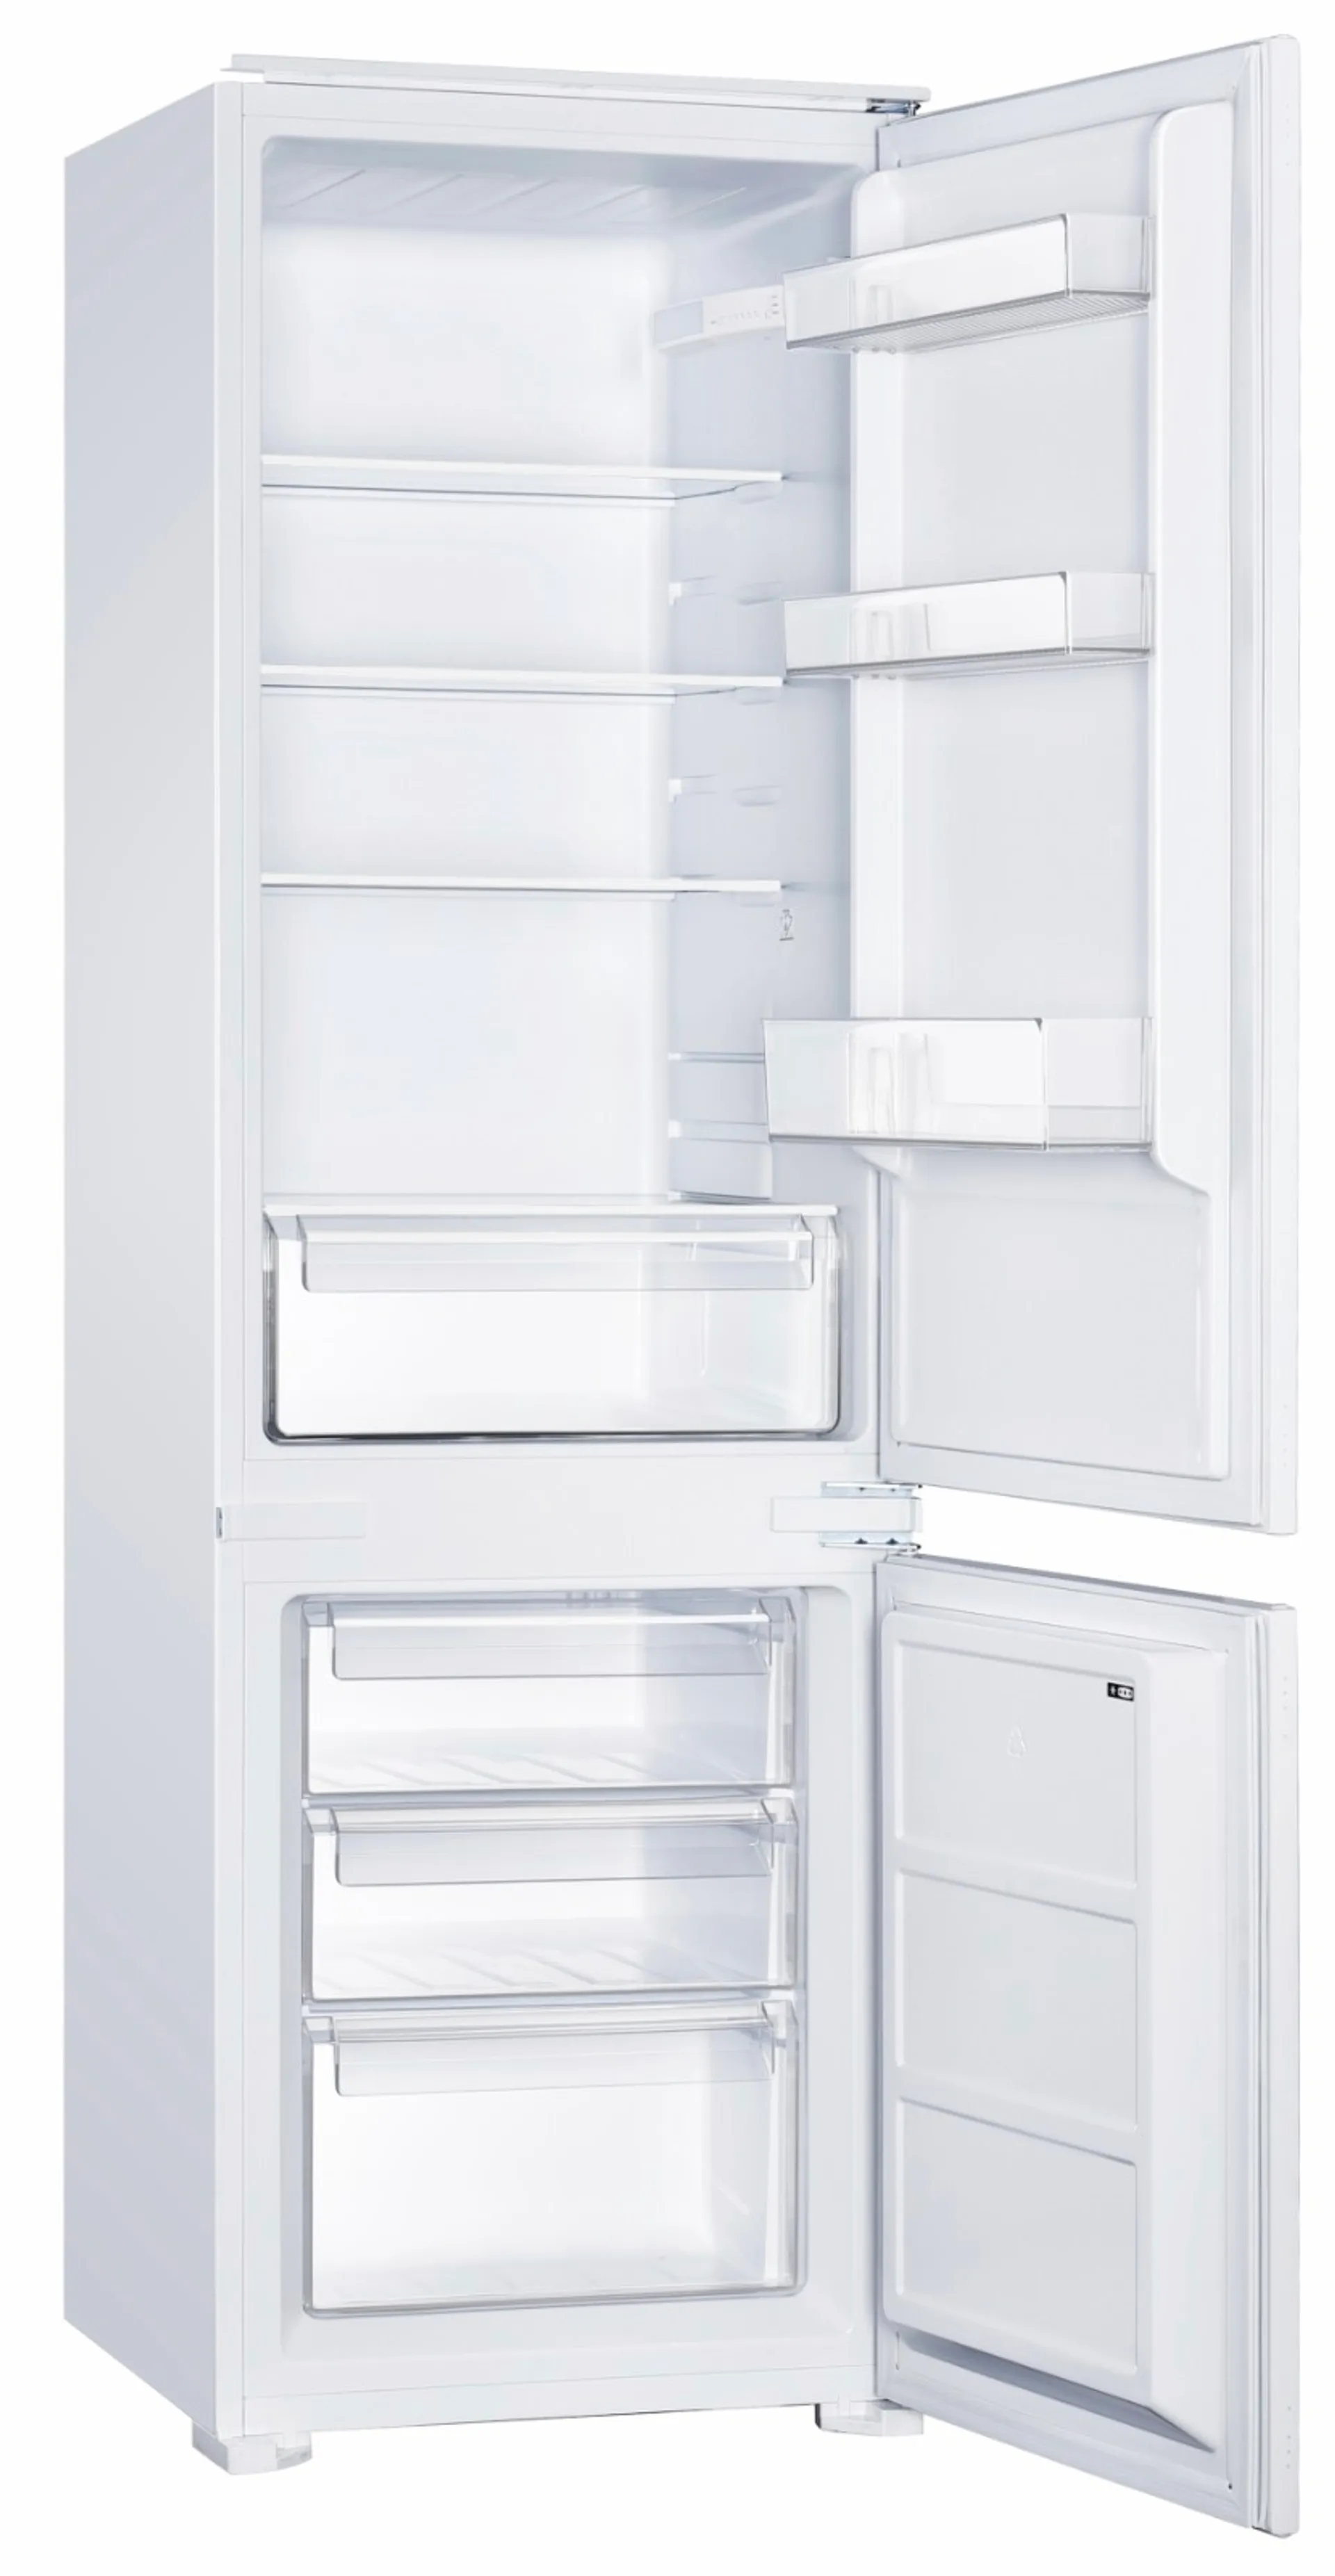 Ecotronic jääkaappipakastin KF259B14 valkoinen